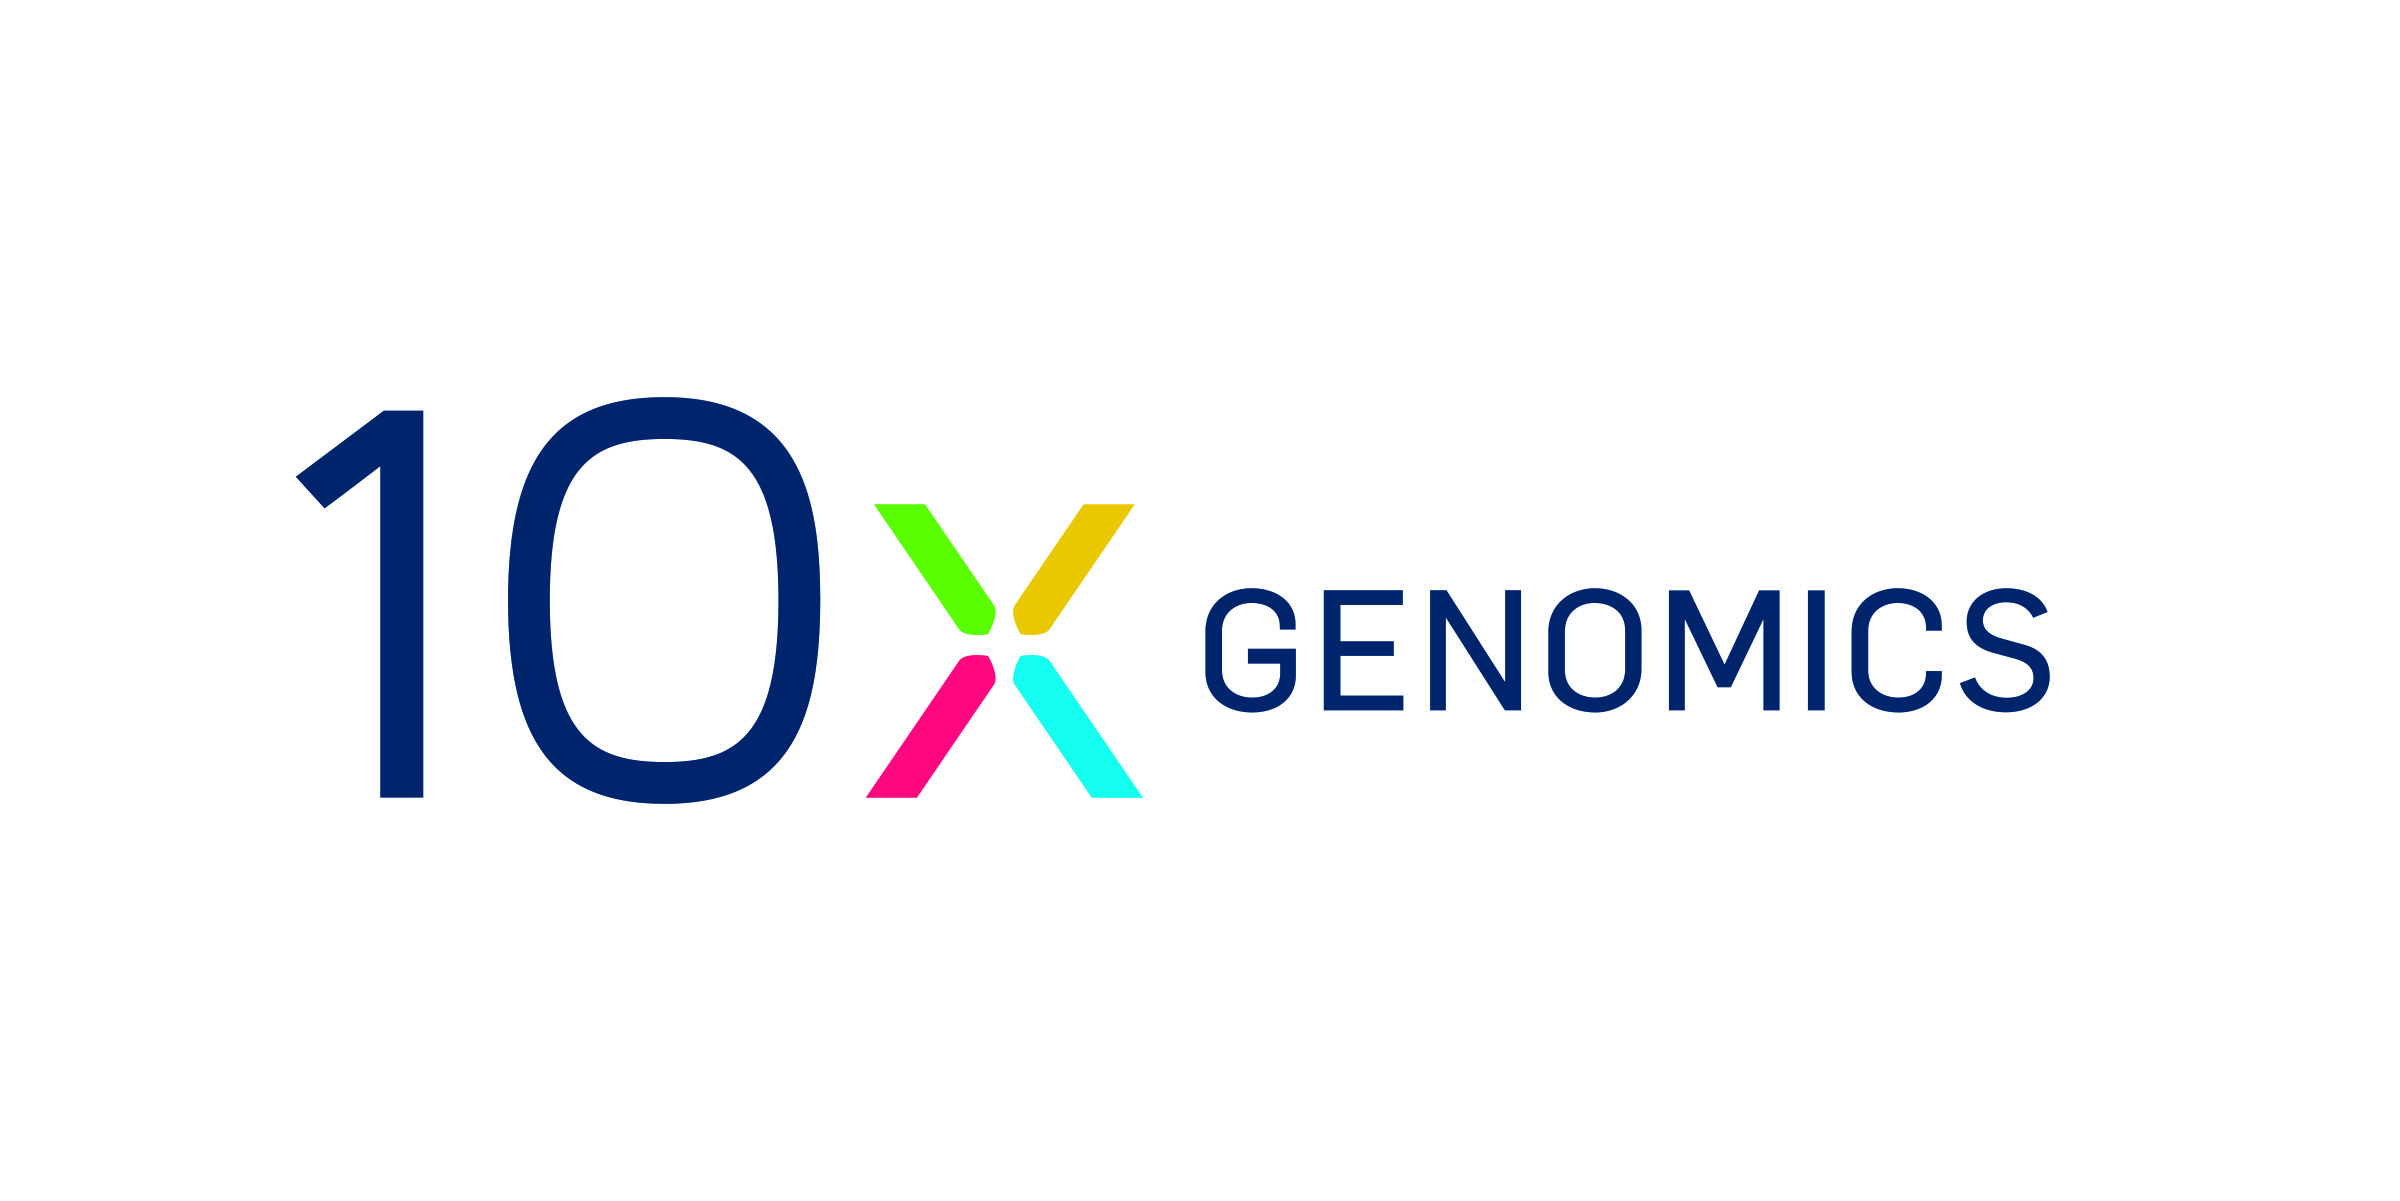 10x Genomics